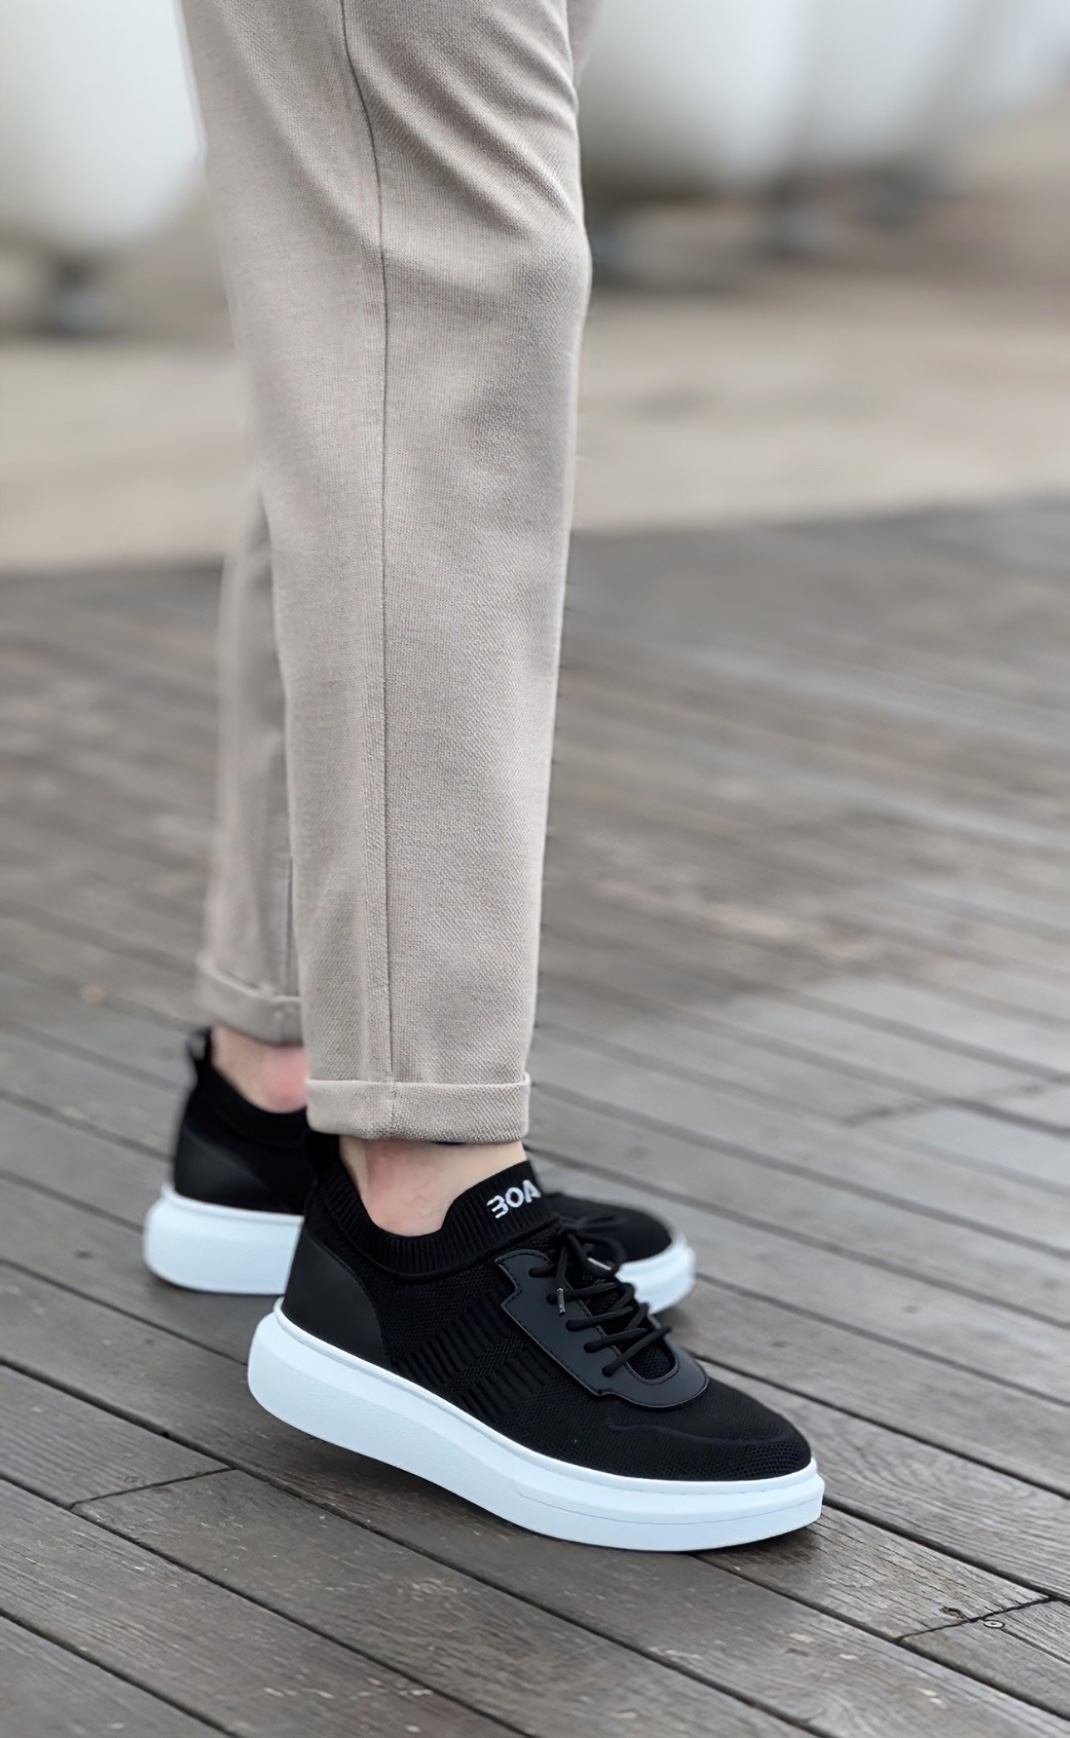 CLZ946 Özel Örme Triko Tarz Siyah Renk Spor Ayakkabı